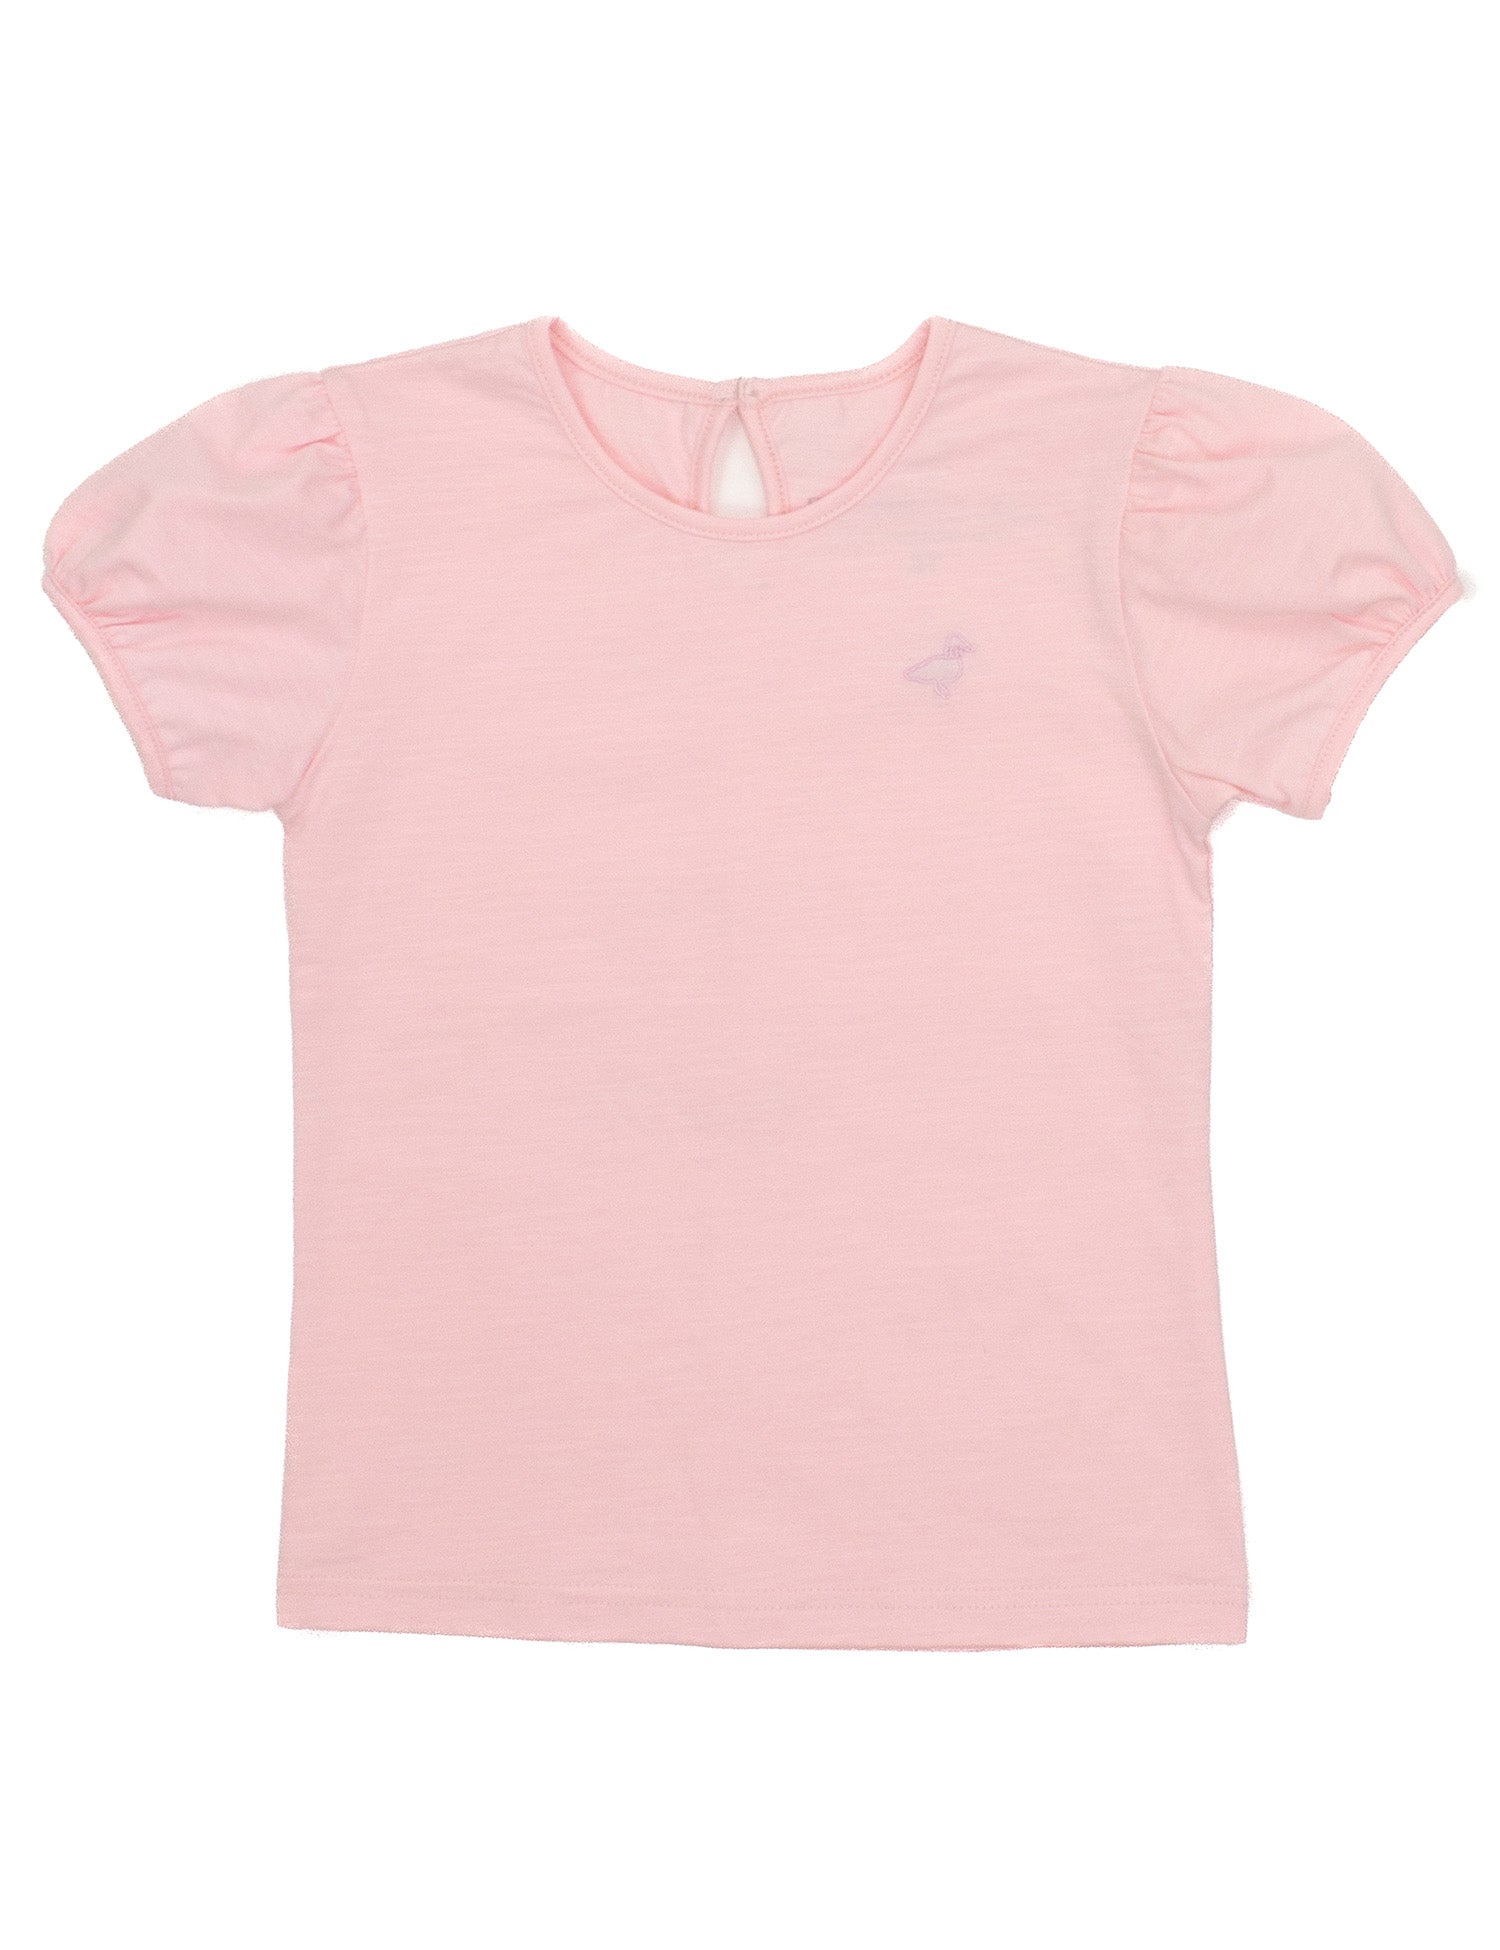 Girls Sadie Shirt Light Pink